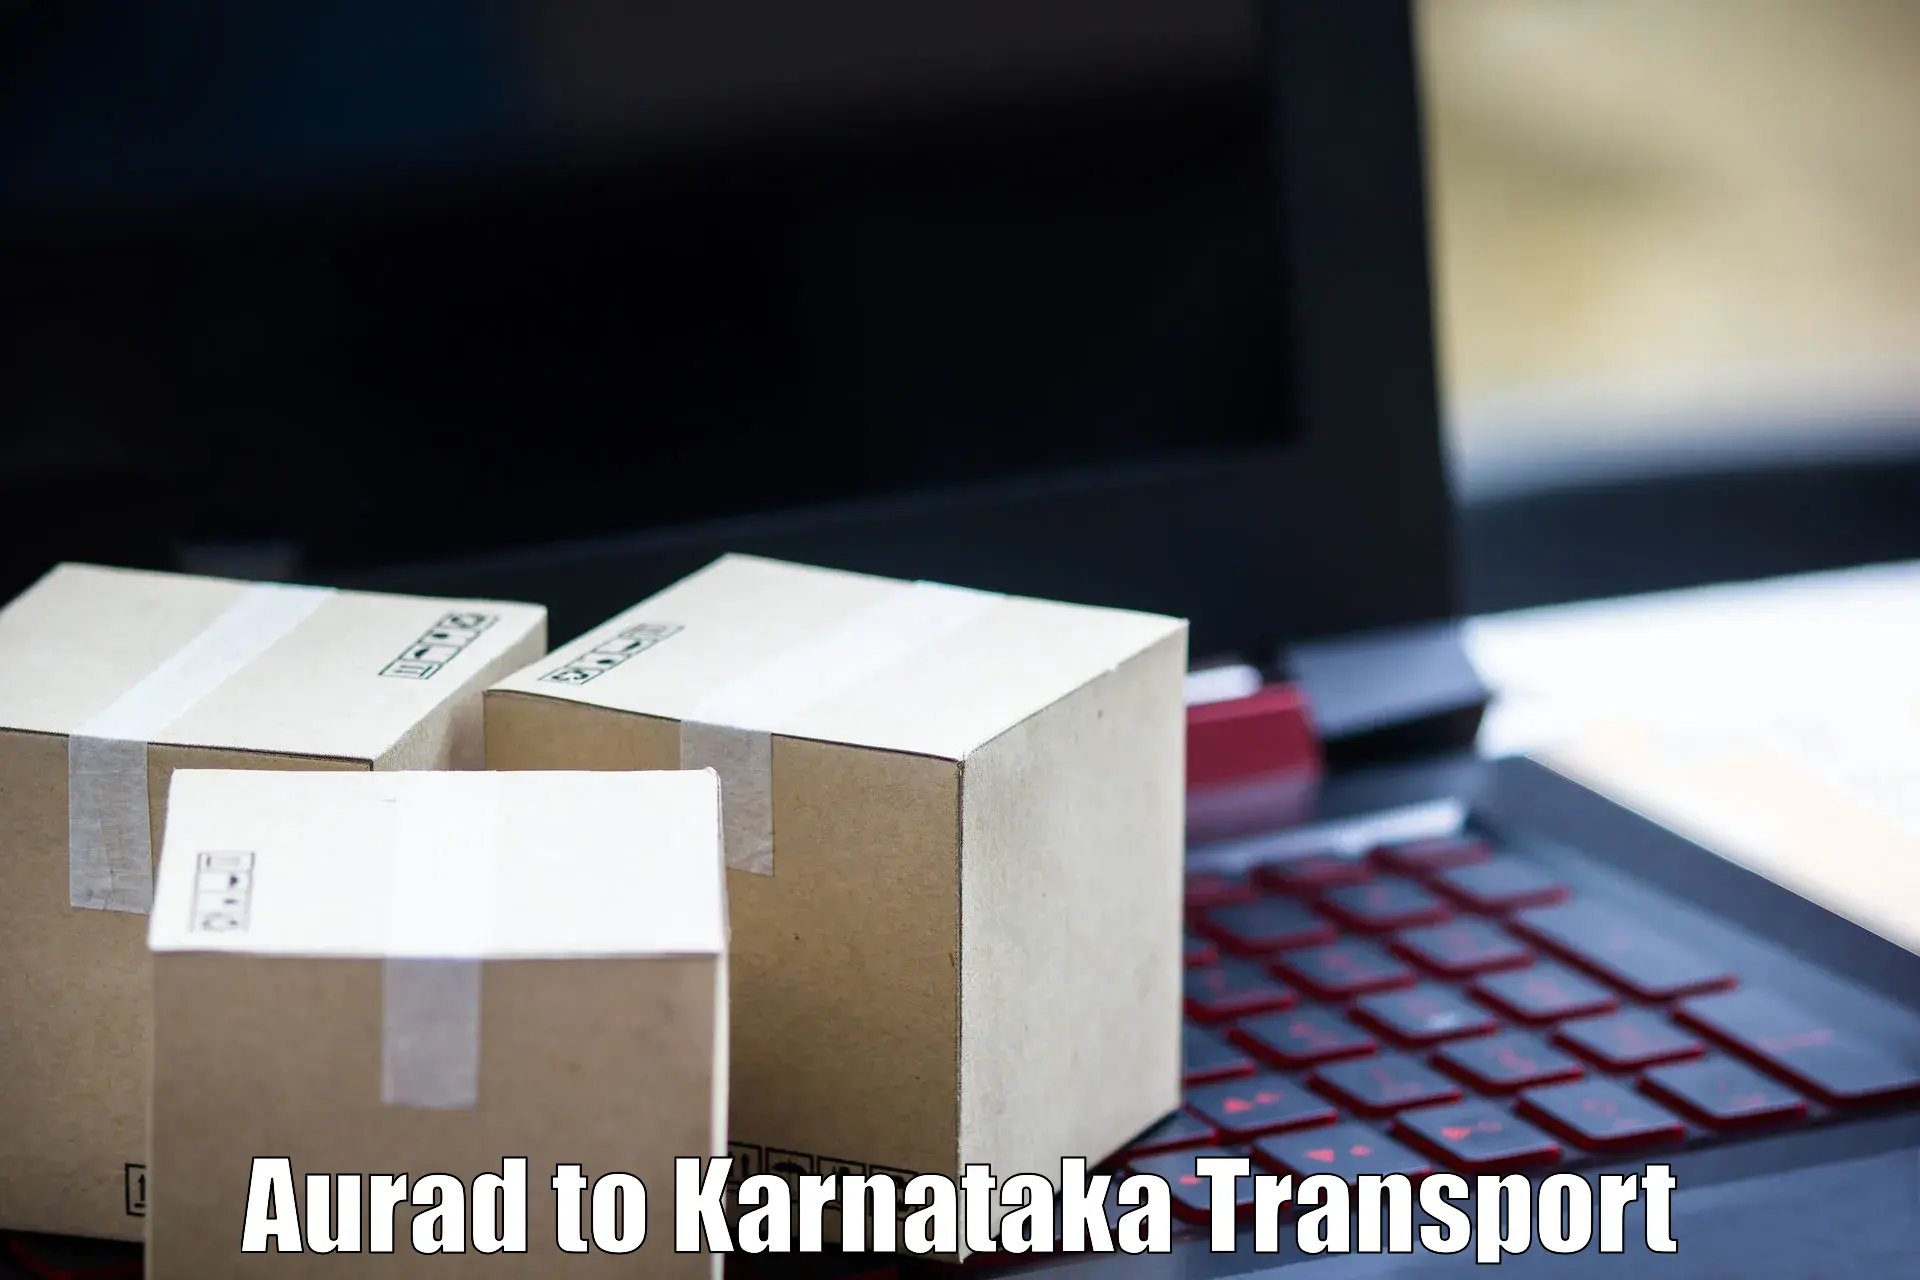 Online transport service Aurad to Bengaluru